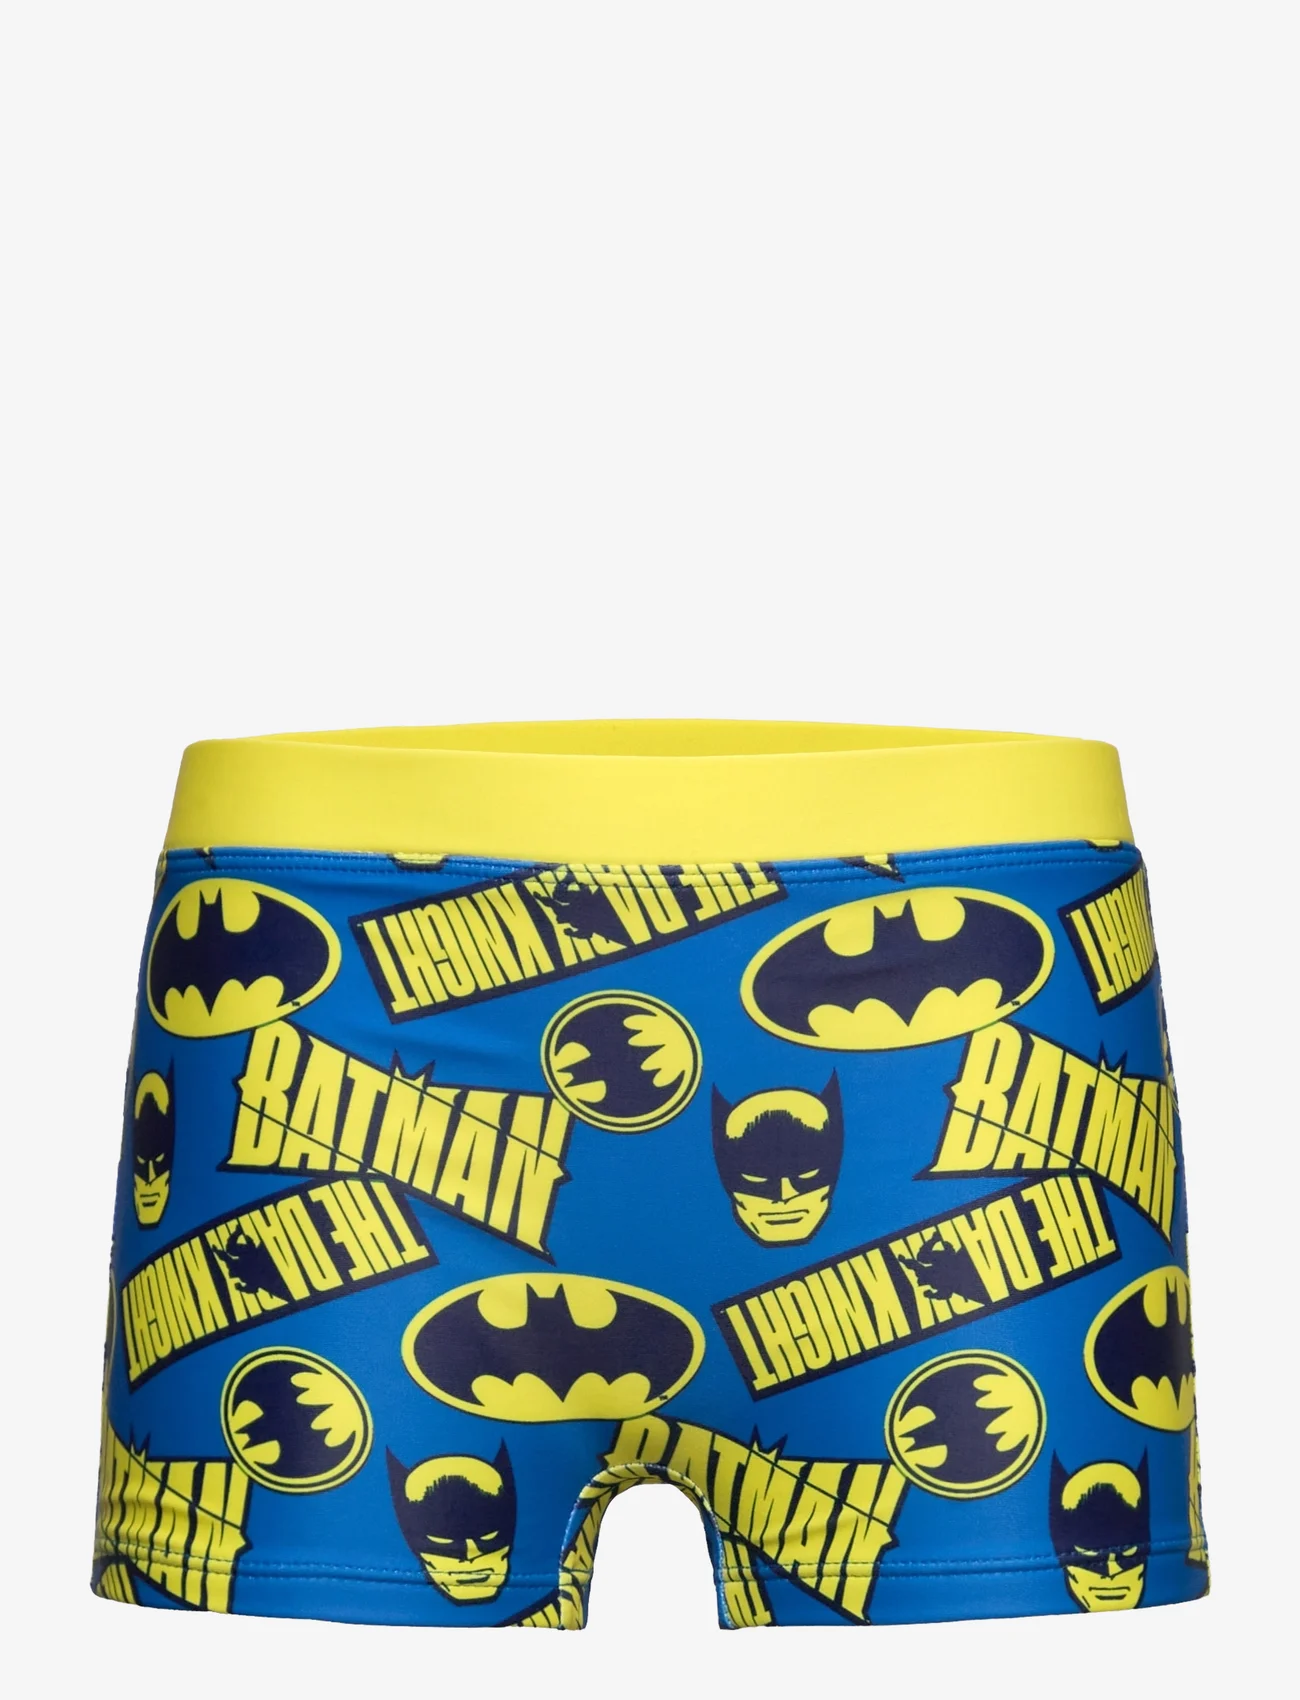 Batman - Board short swimwear - onderbroeken - yellow - 0